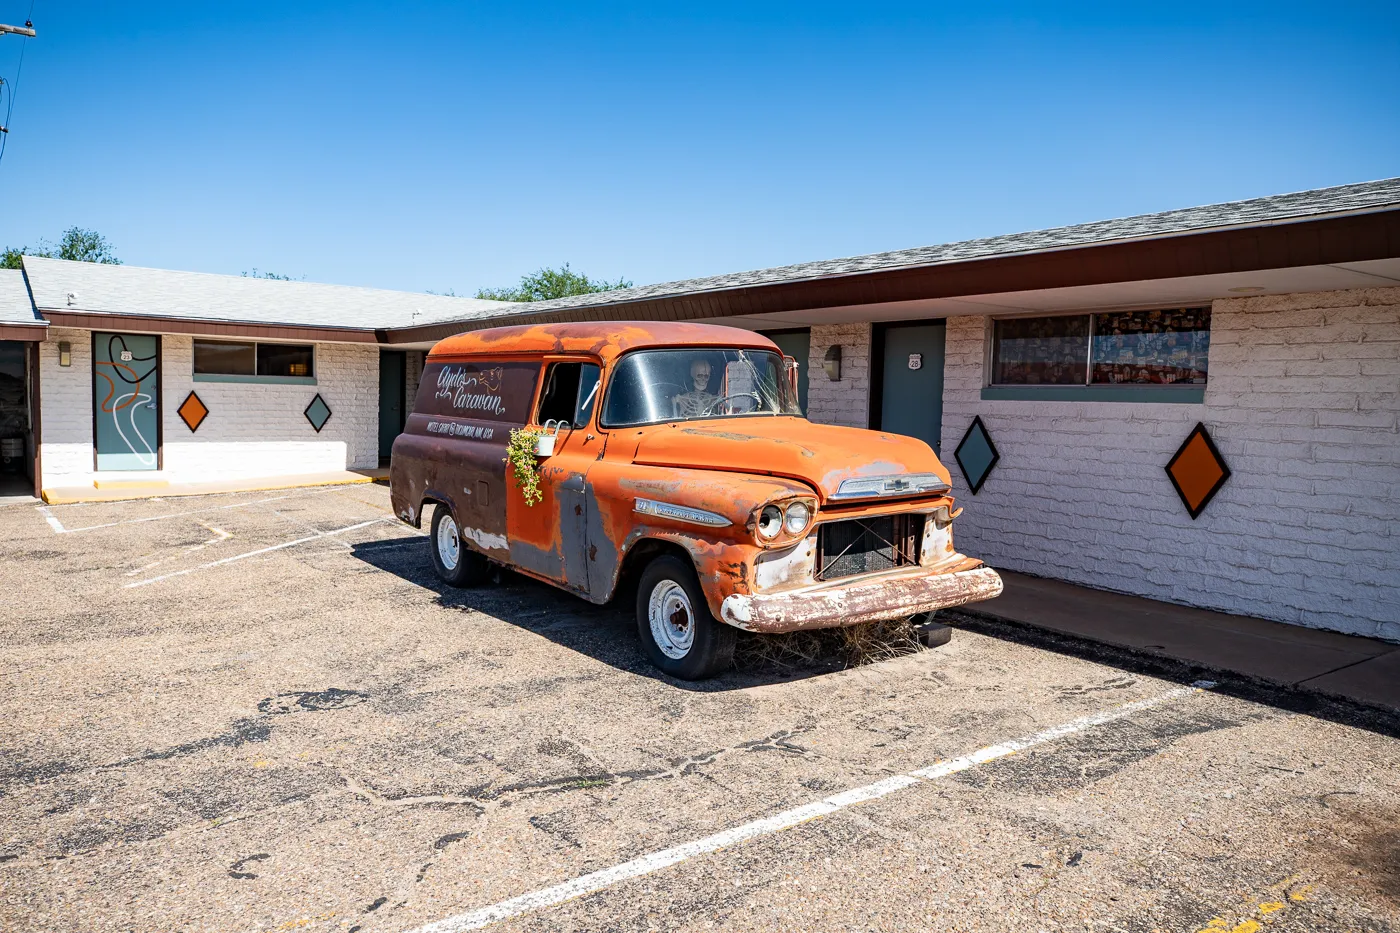 Motel Safari in Tucumcari, New Mexico (Route 66 Motel)